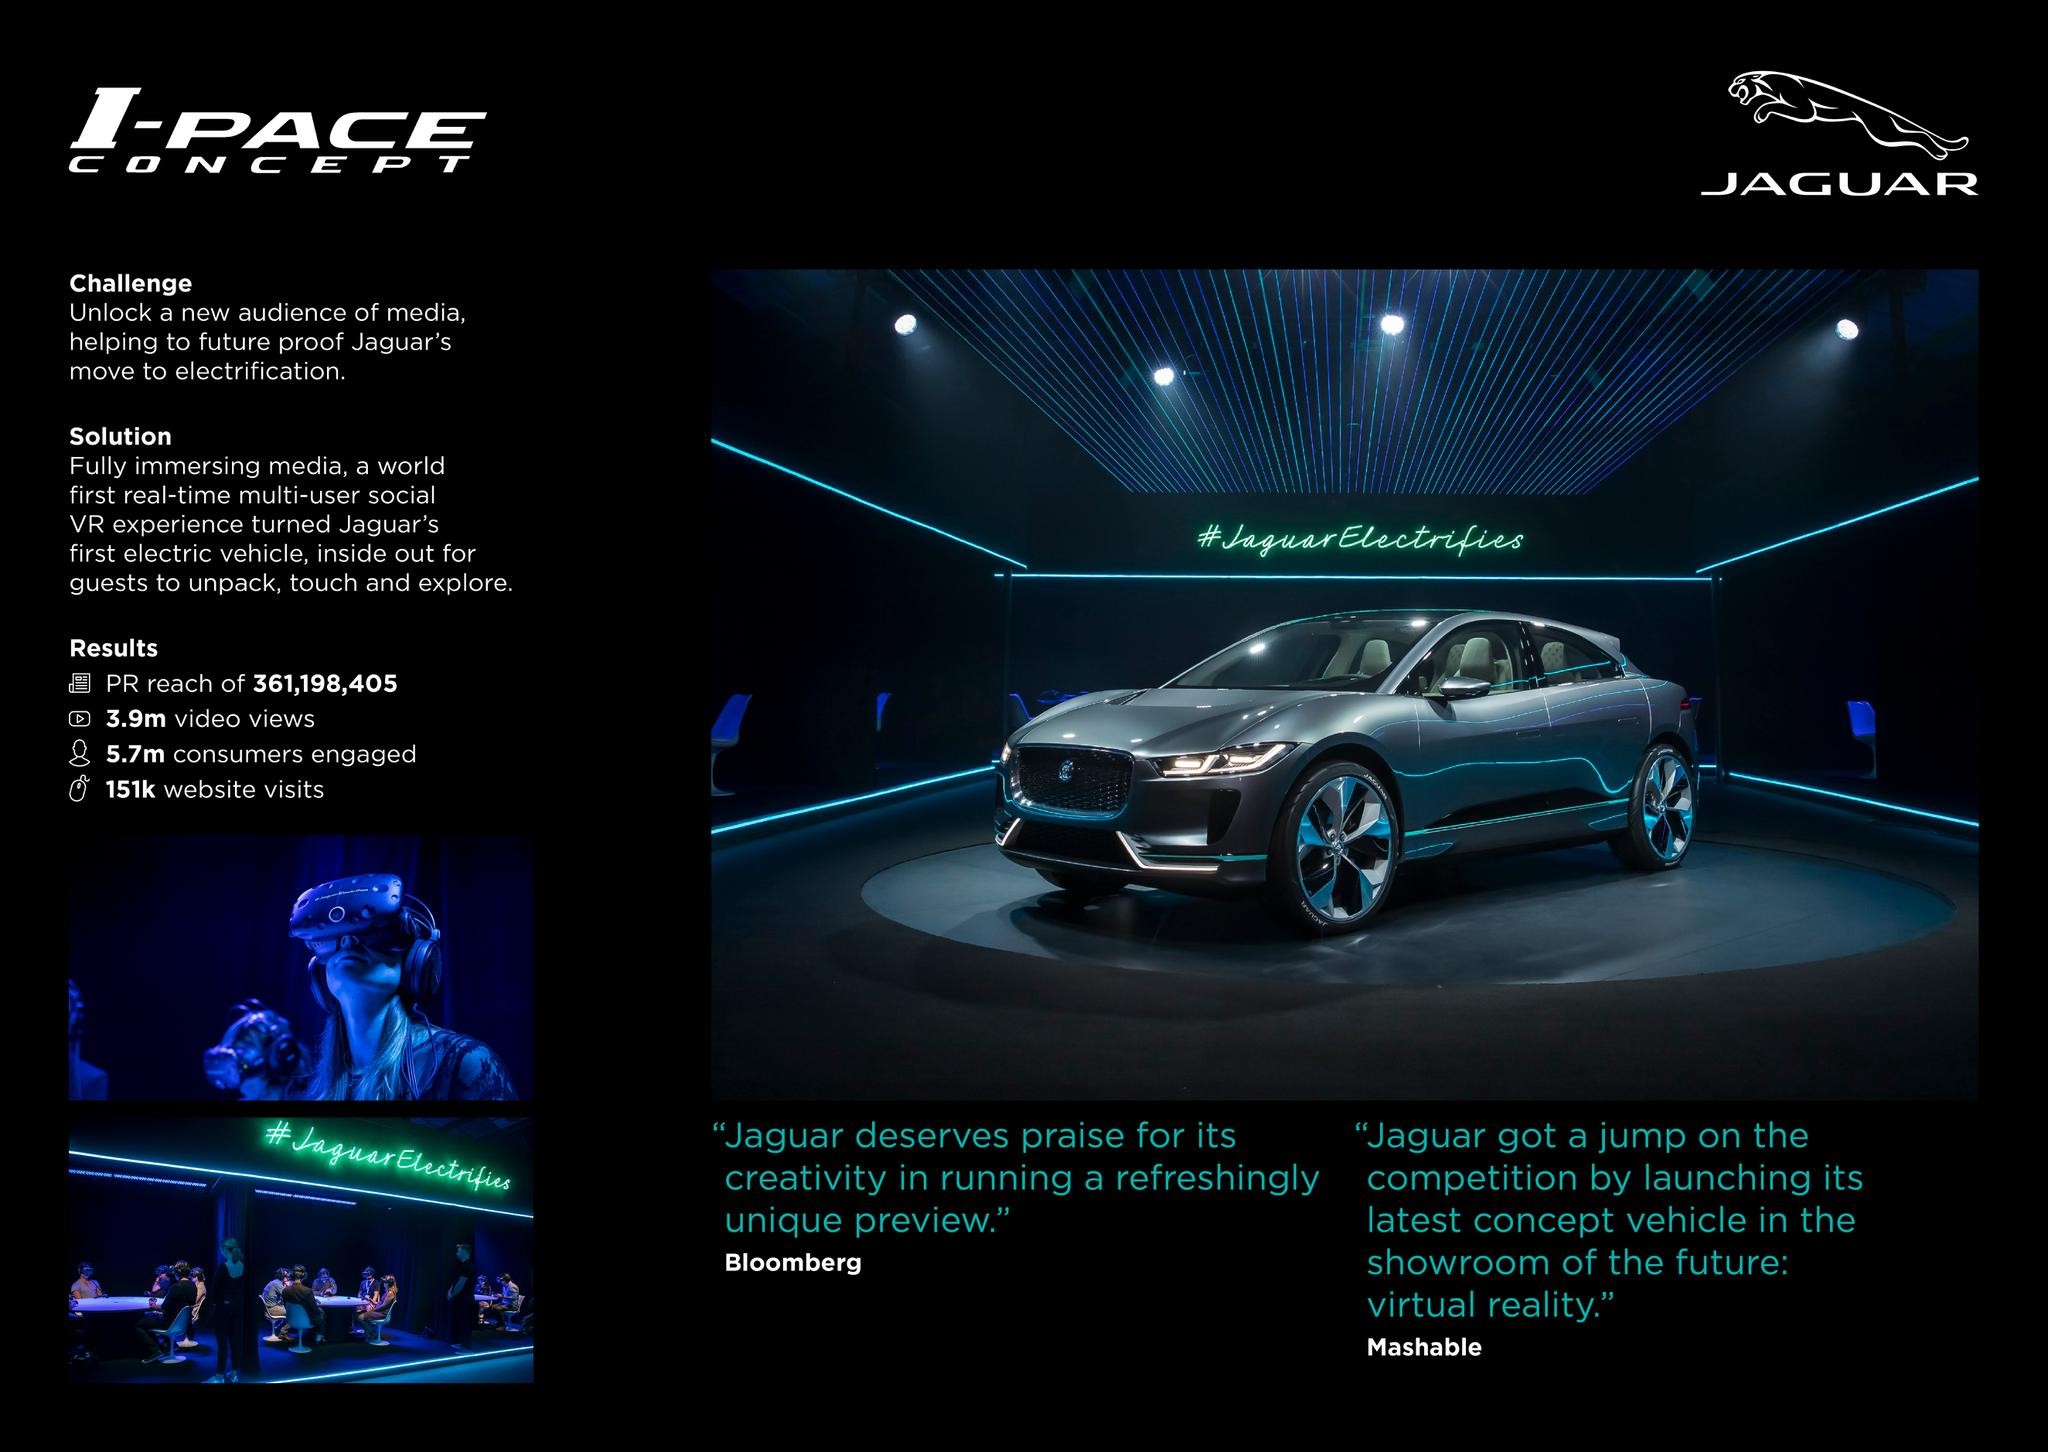 Jaguar Electrifies - The Future Is Now